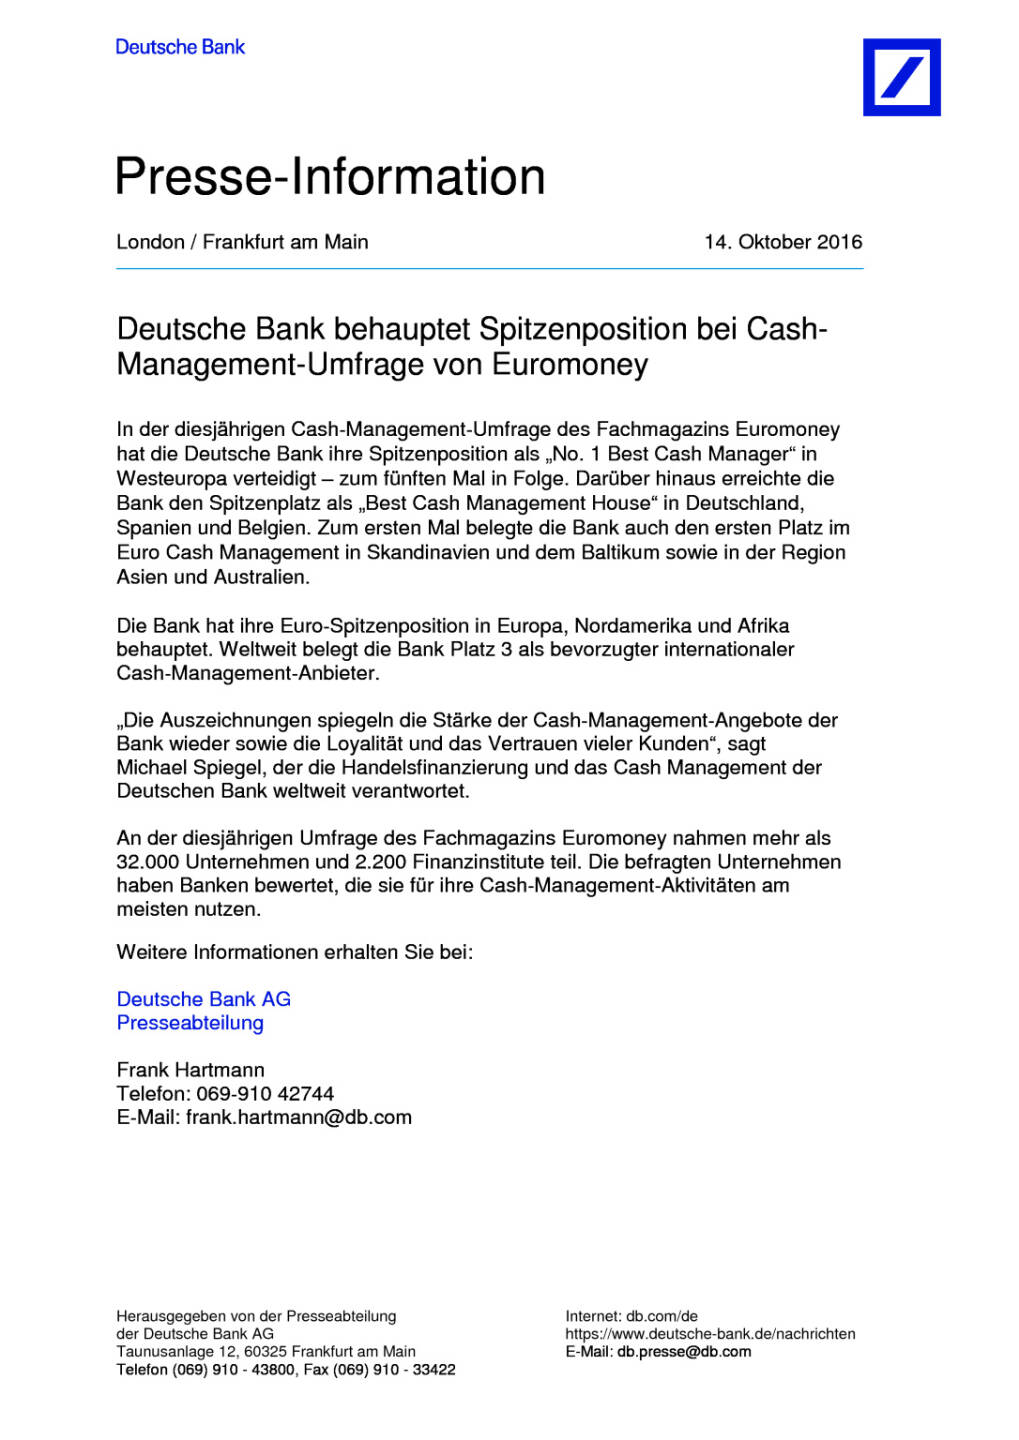 Deutsche Bank: Cash-Management-Umfrage von Euromoney, Seite 1/2, komplettes Dokument unter http://boerse-social.com/static/uploads/file_1902_deutsche_bank_cash-management-umfrage_von_euromoney.pdf